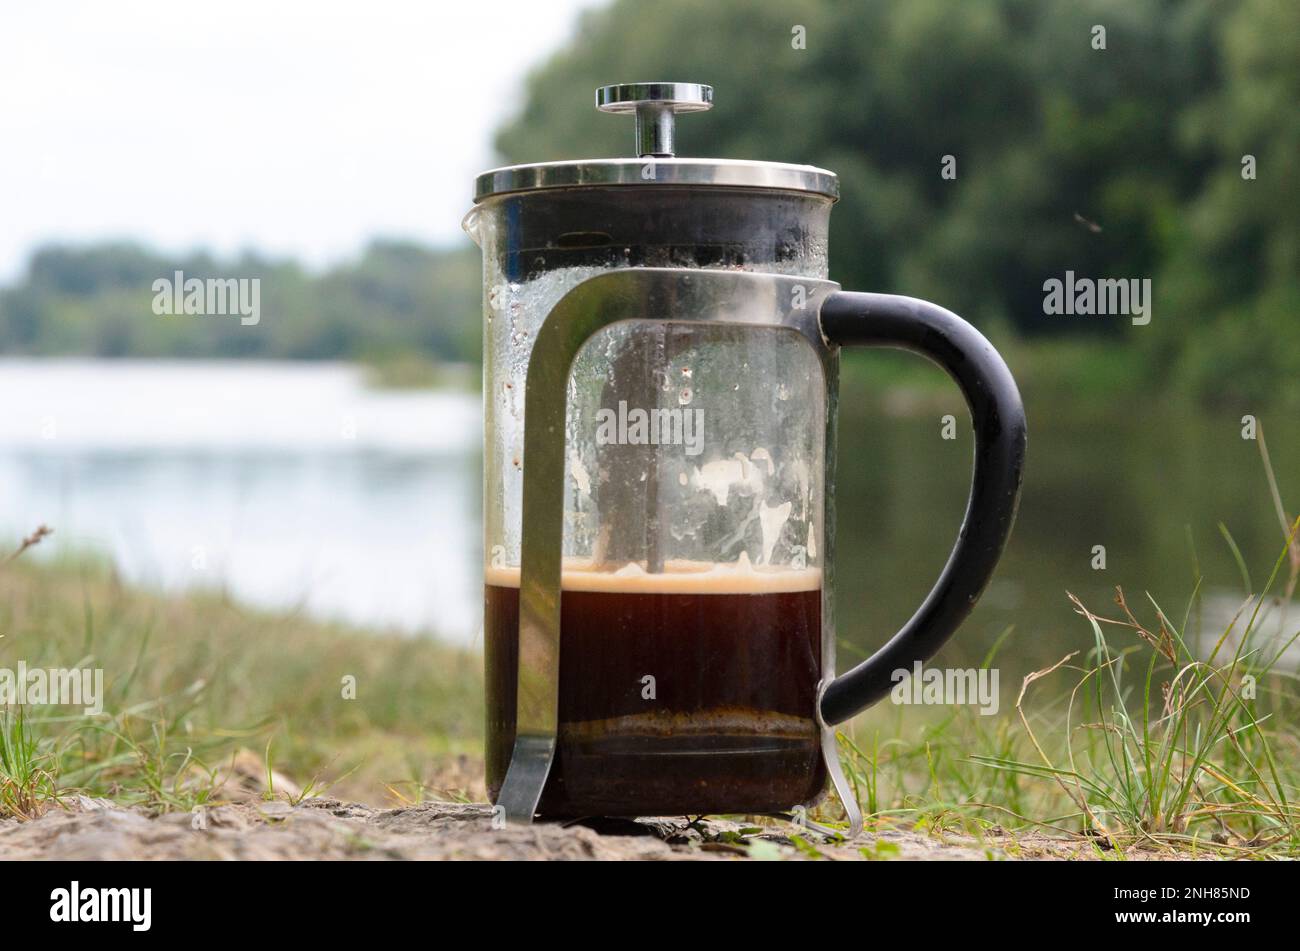 Kaffee, der in einer französischen Presse auf den Steinen des Flusses im Wald in der Nähe des Grases gebrüht wird. Stockfoto